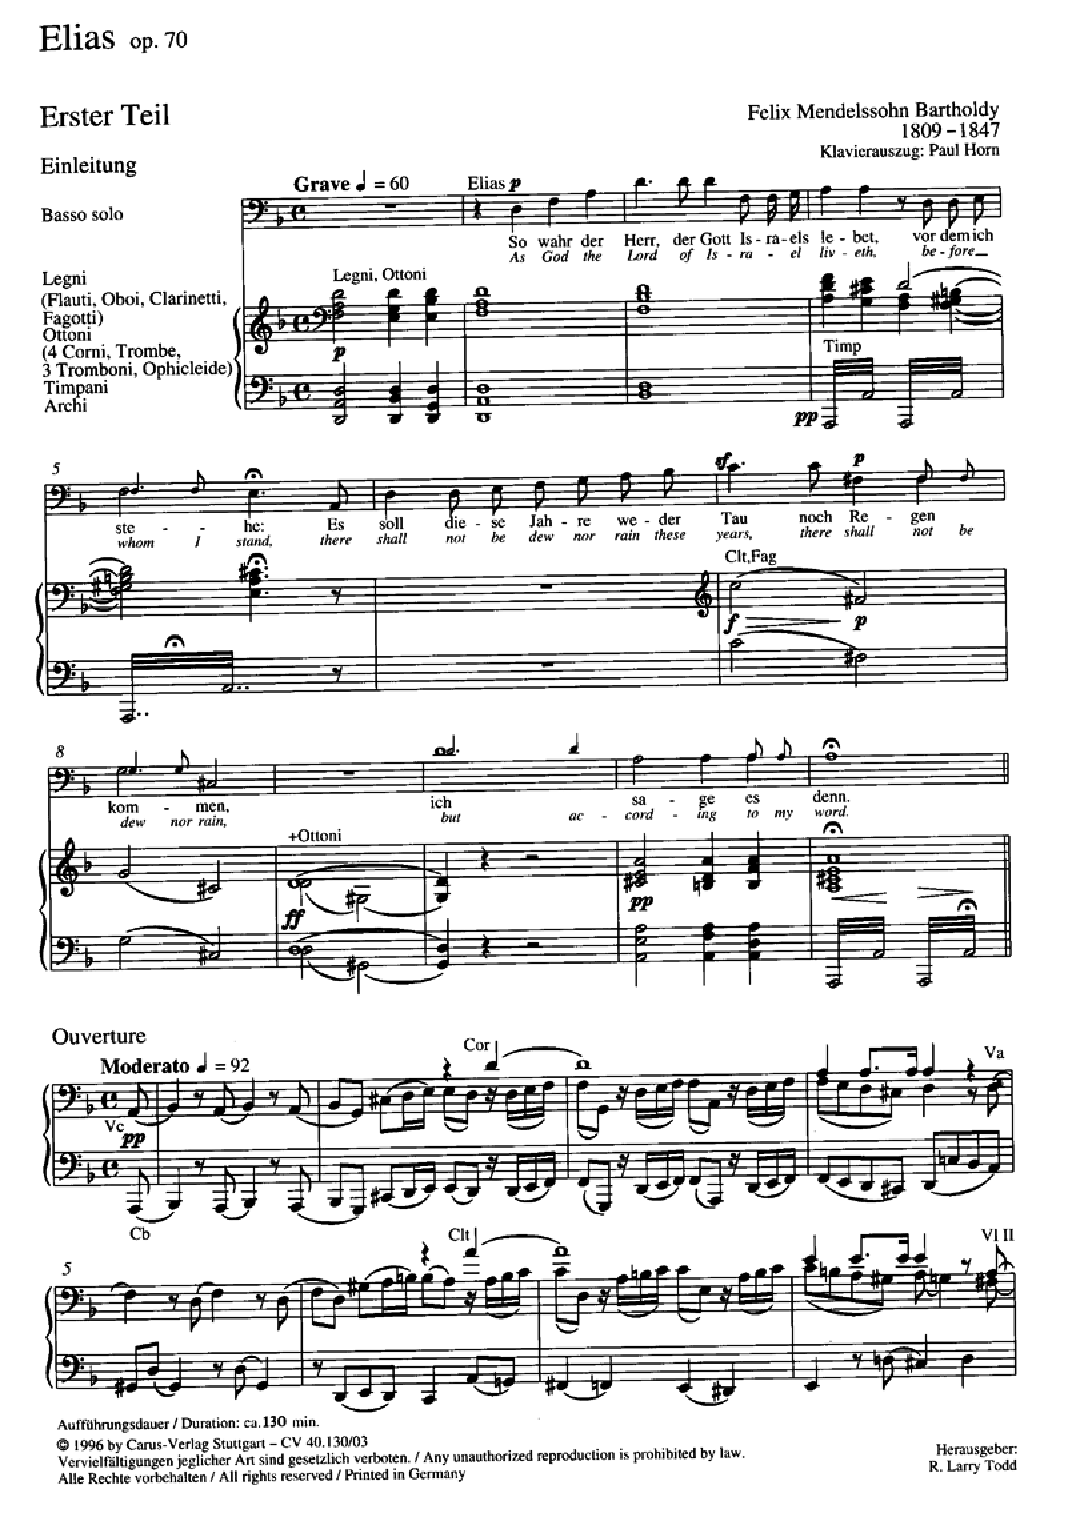 Elijah, Op. 70 English / German Vocal Score